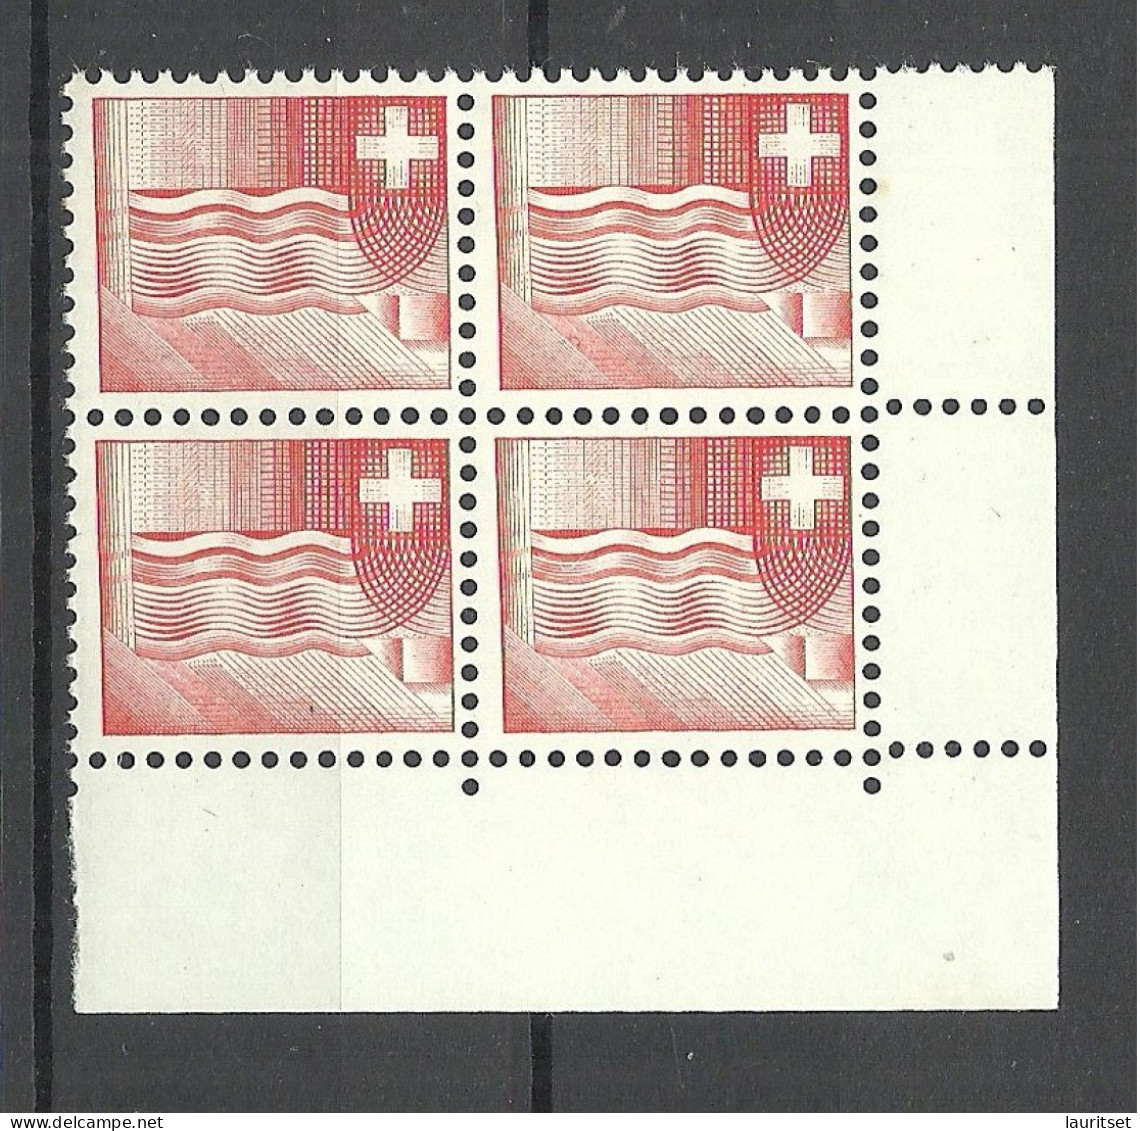 SCHWEIZ Switzerland 1964 Essay Druckprobe Muster As 4-block MNH - Varietà